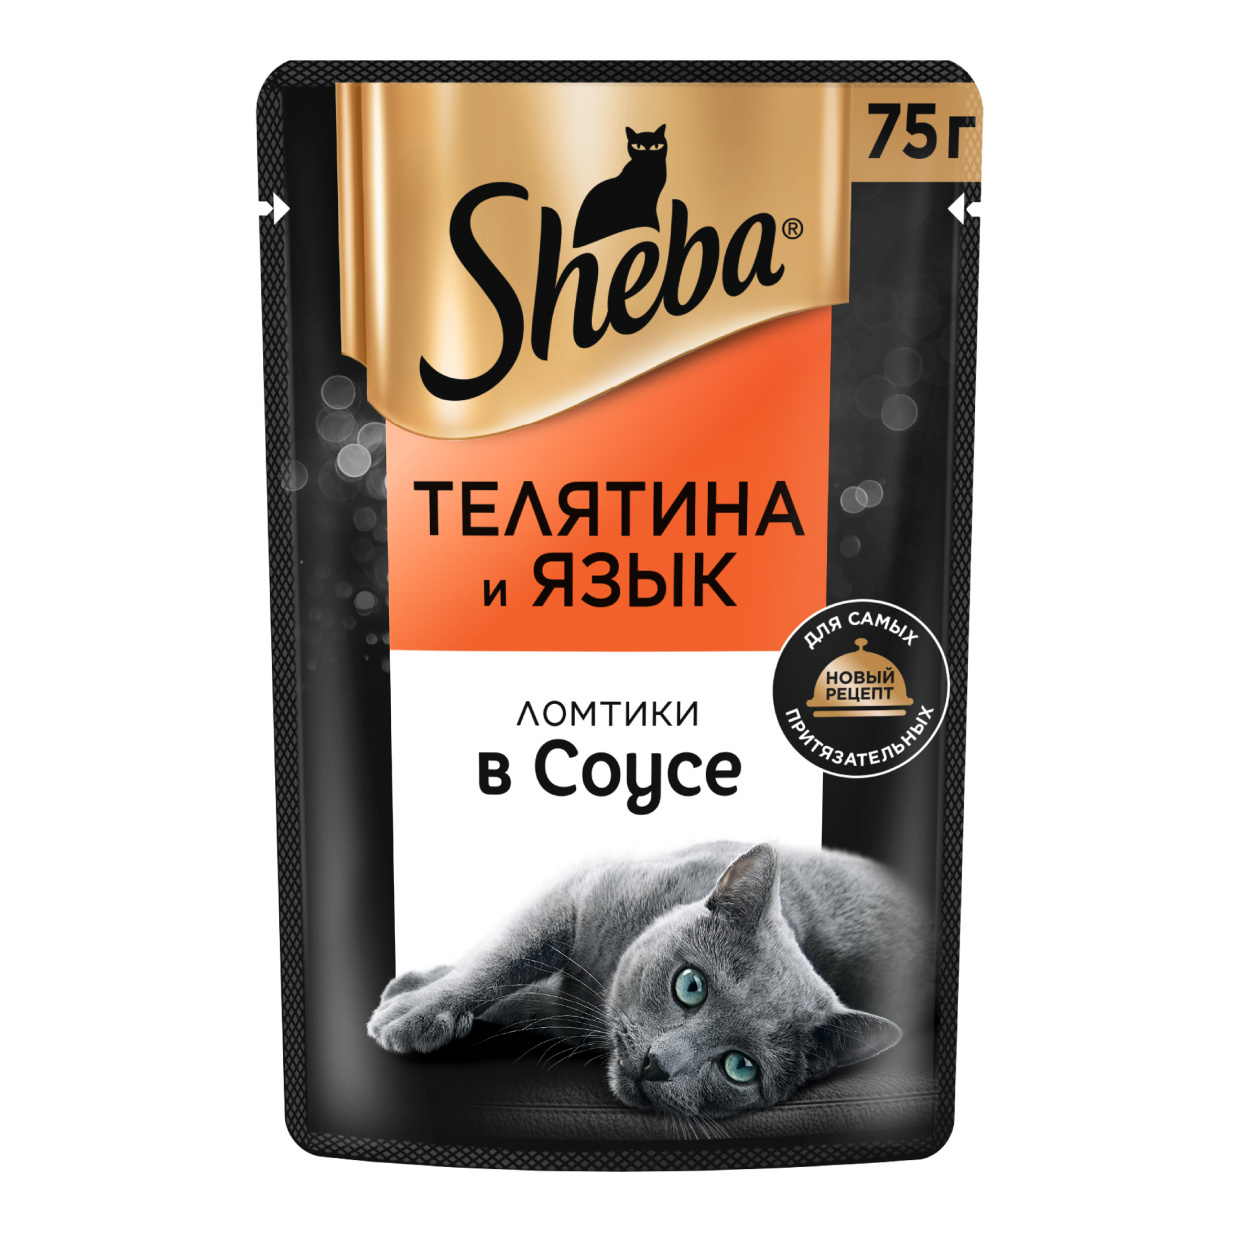 Sheba влажный корм для кошек «Ломтики в соусе с телятиной и языком» (75 г)